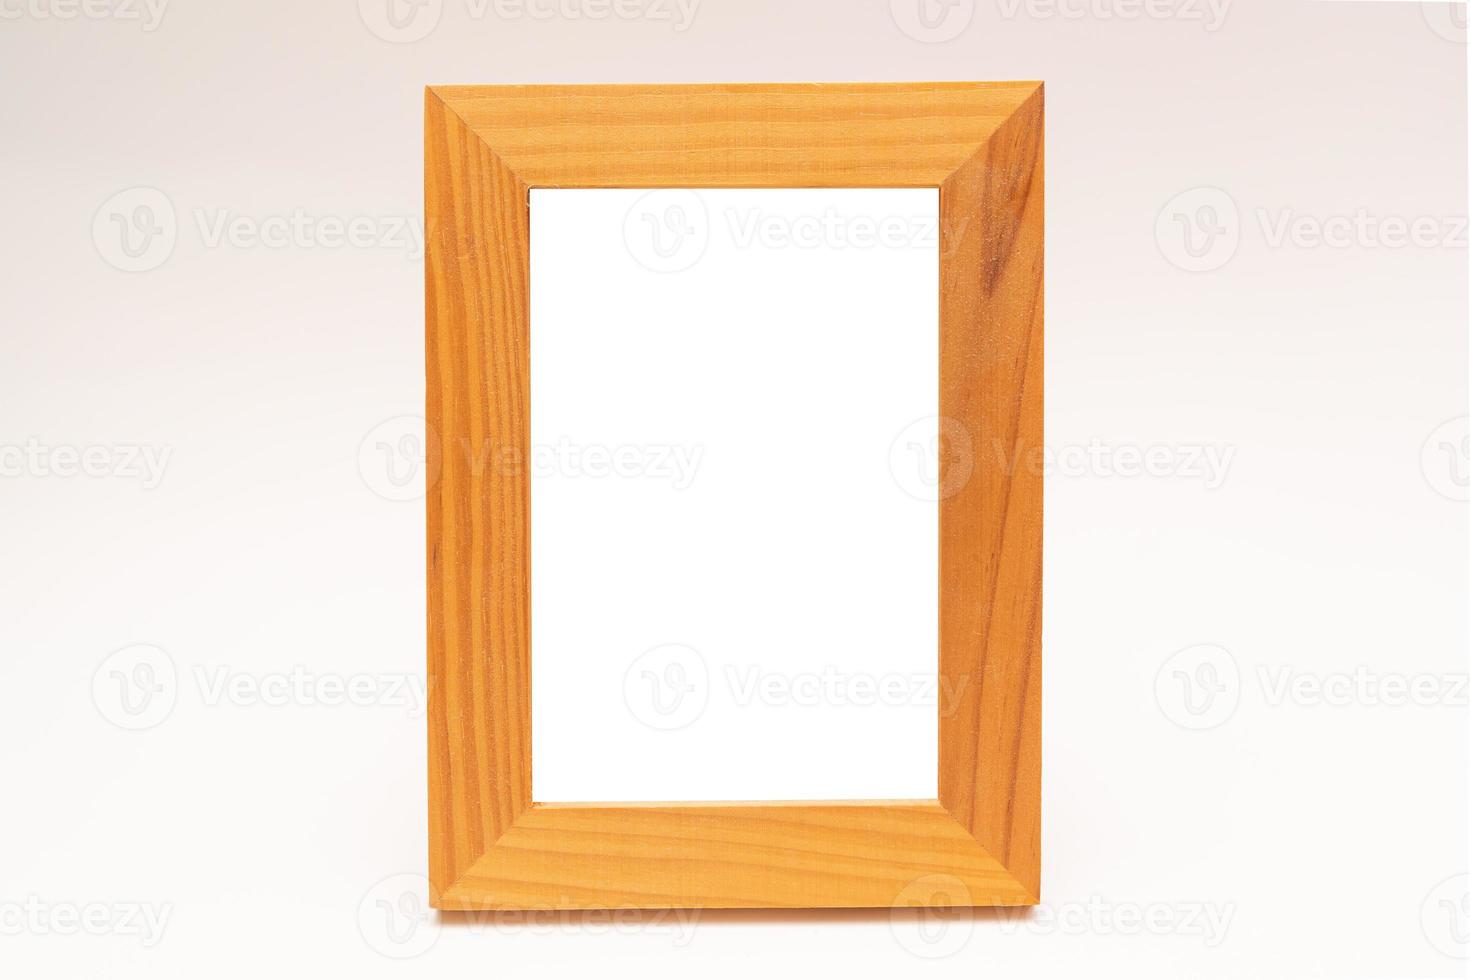 cadre photo en bois. cadre photo isolé sur fond blanc.